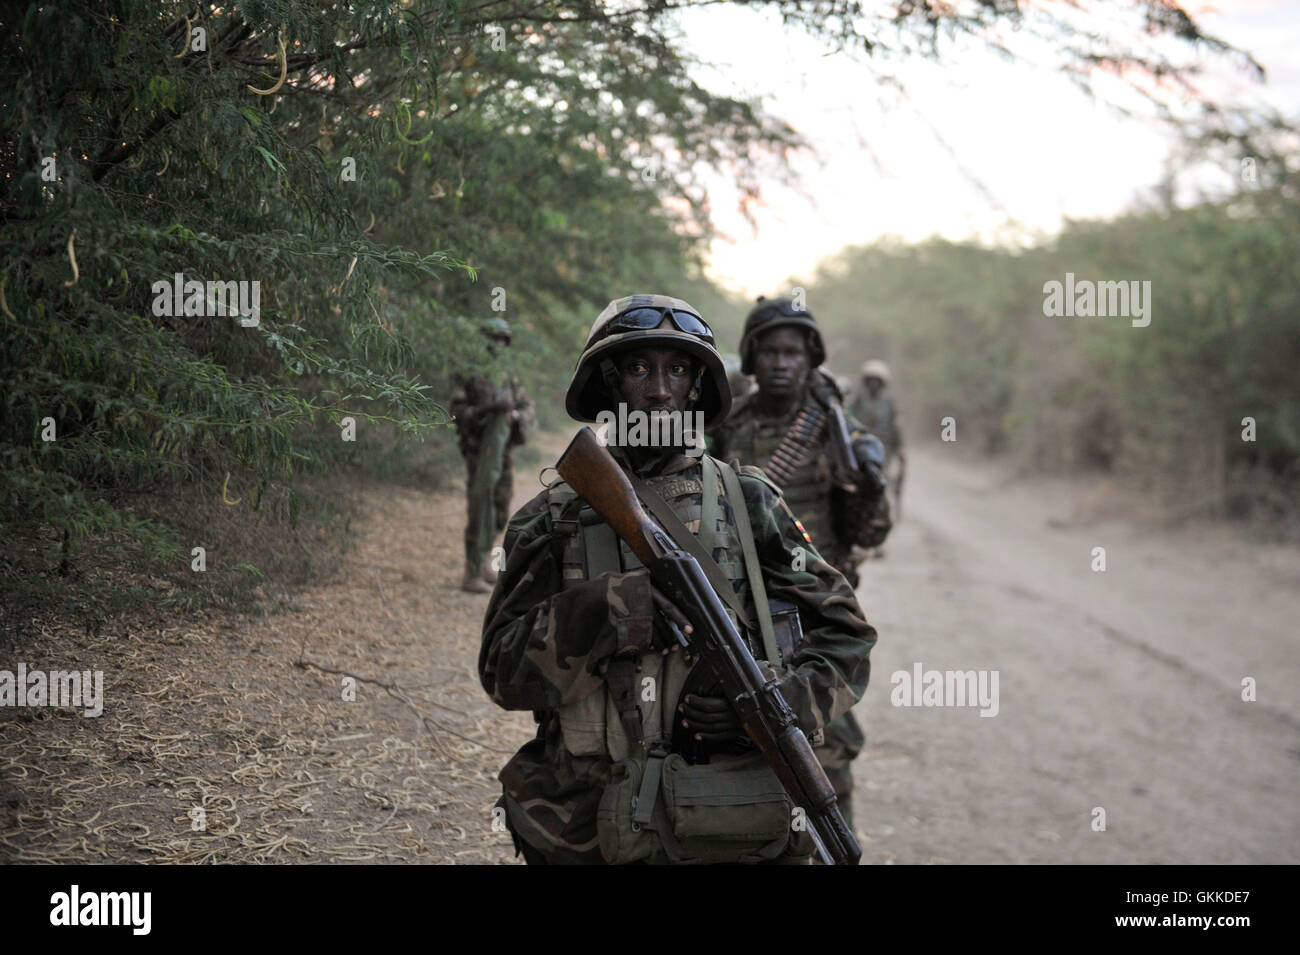 Les soldats ougandais, appartenant à la Mission de l'Union africaine en Somalie, pause pendant leur marche vers Qoryooley, Somalie, le 22 mars au cours d'une offensive pour prendre la ville d'al Shabab militants. PHOTO ONU / UA IST Tobin Jones Banque D'Images